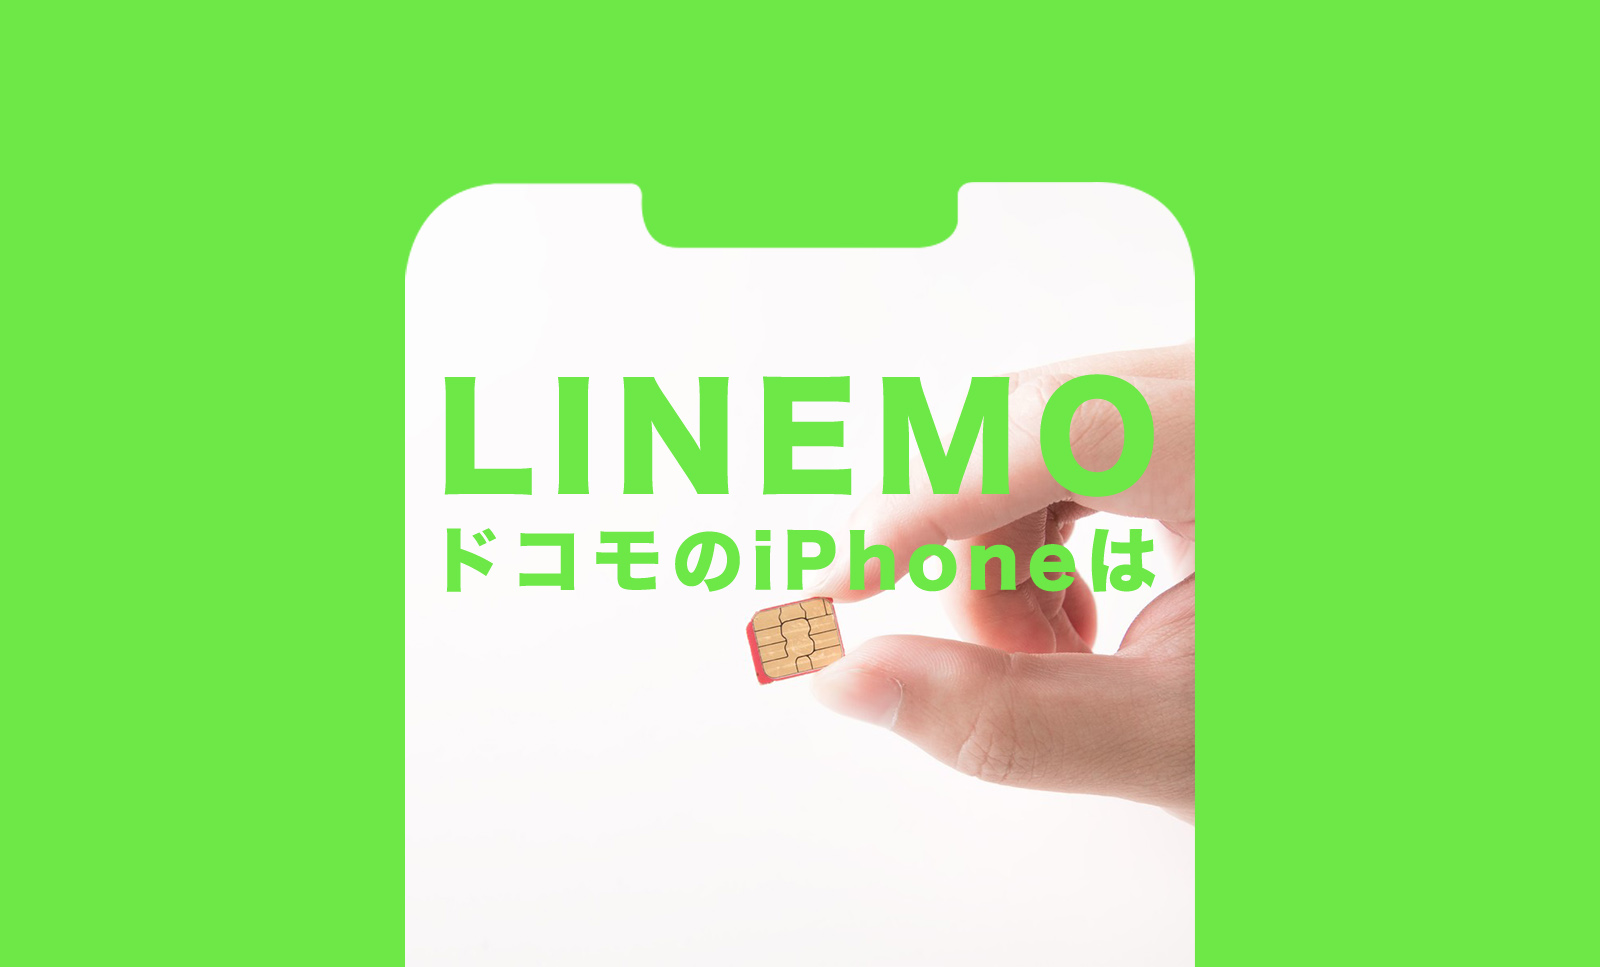 LINEMO(ラインモ)にドコモ端末やドコモのスマホ&iPhoneを持ち込みたい。のサムネイル画像